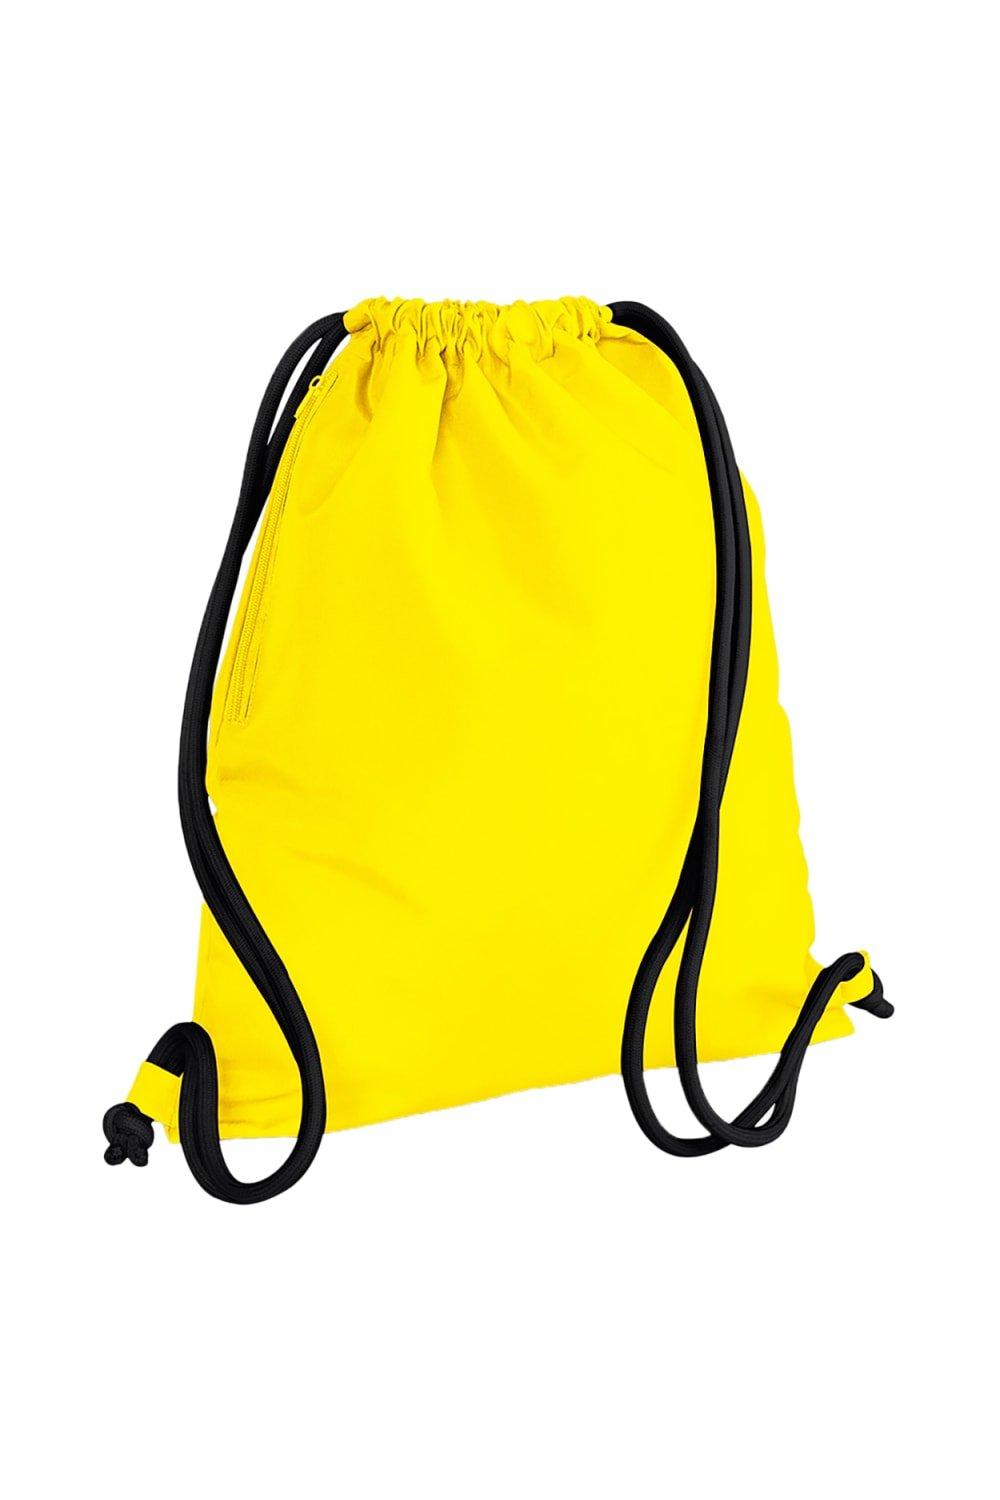 Сумка Icon на шнурке / Gymsac Bagbase, желтый сумка urban gymsac на шнурке sol s зеленый